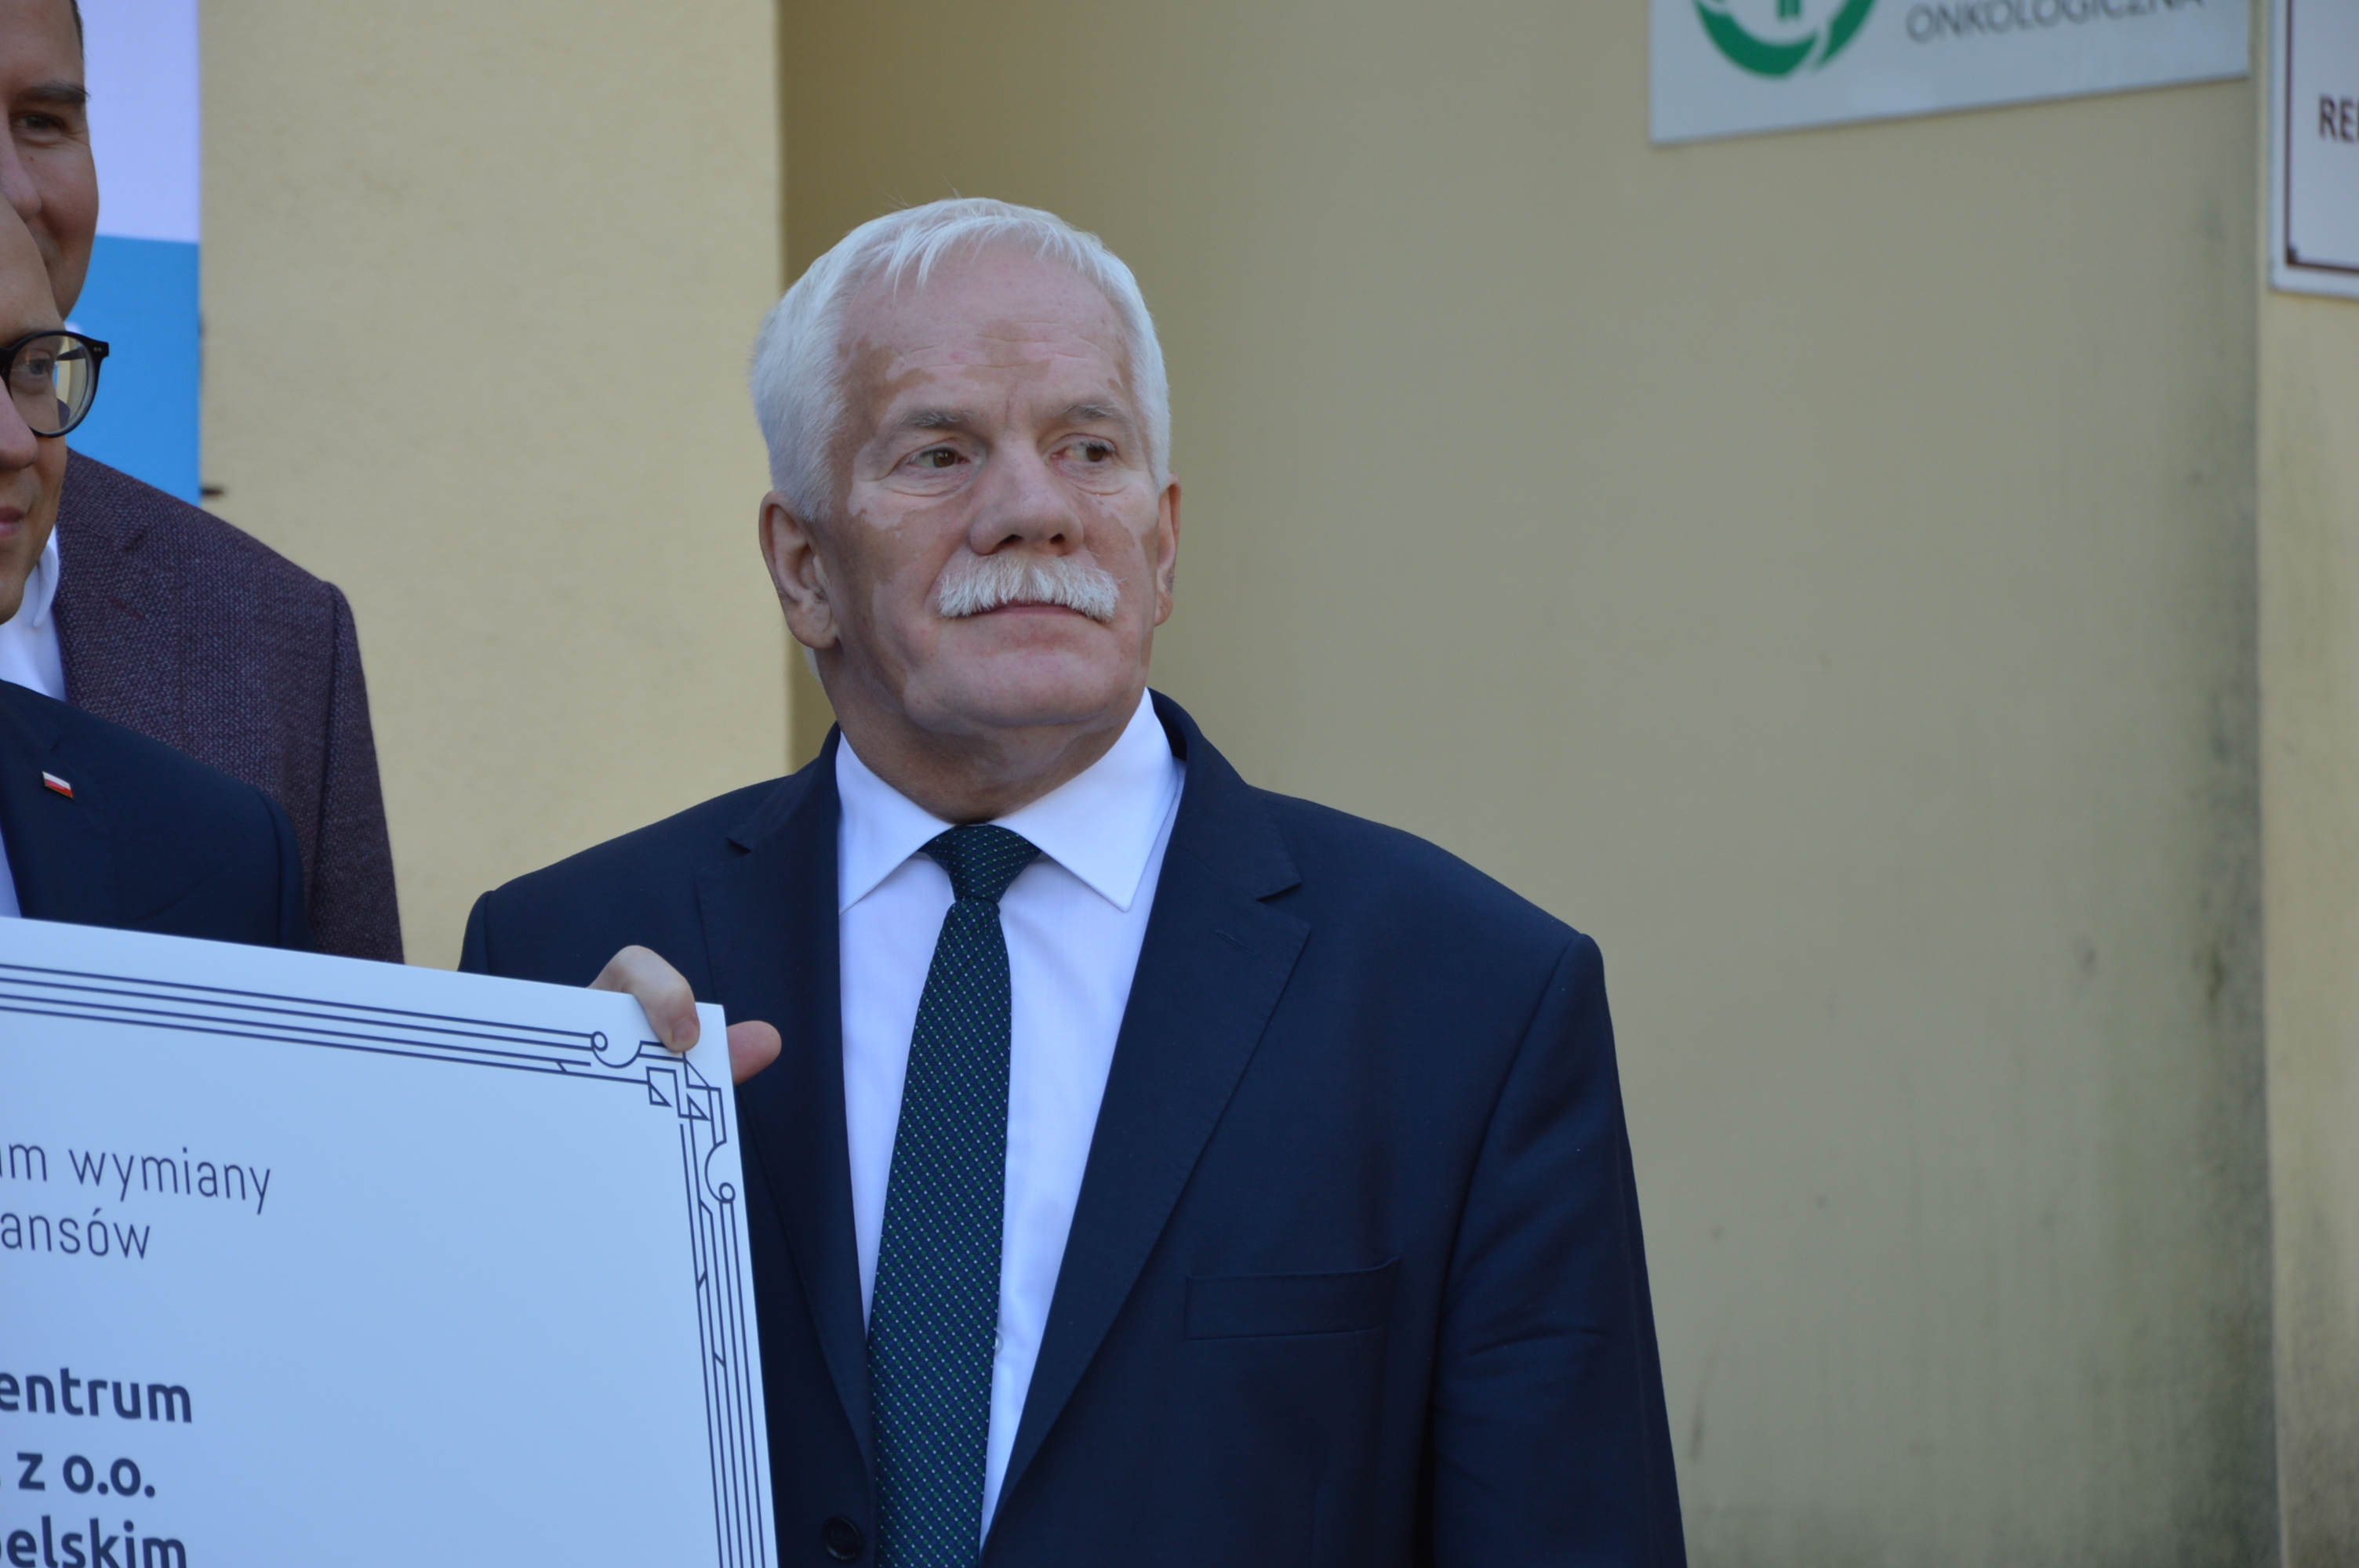 Opole Lubelskie: Trzy tysiące złotych podwyżki dla prezesa Powiatowego Centrum Zdrowia  - Zdjęcie główne